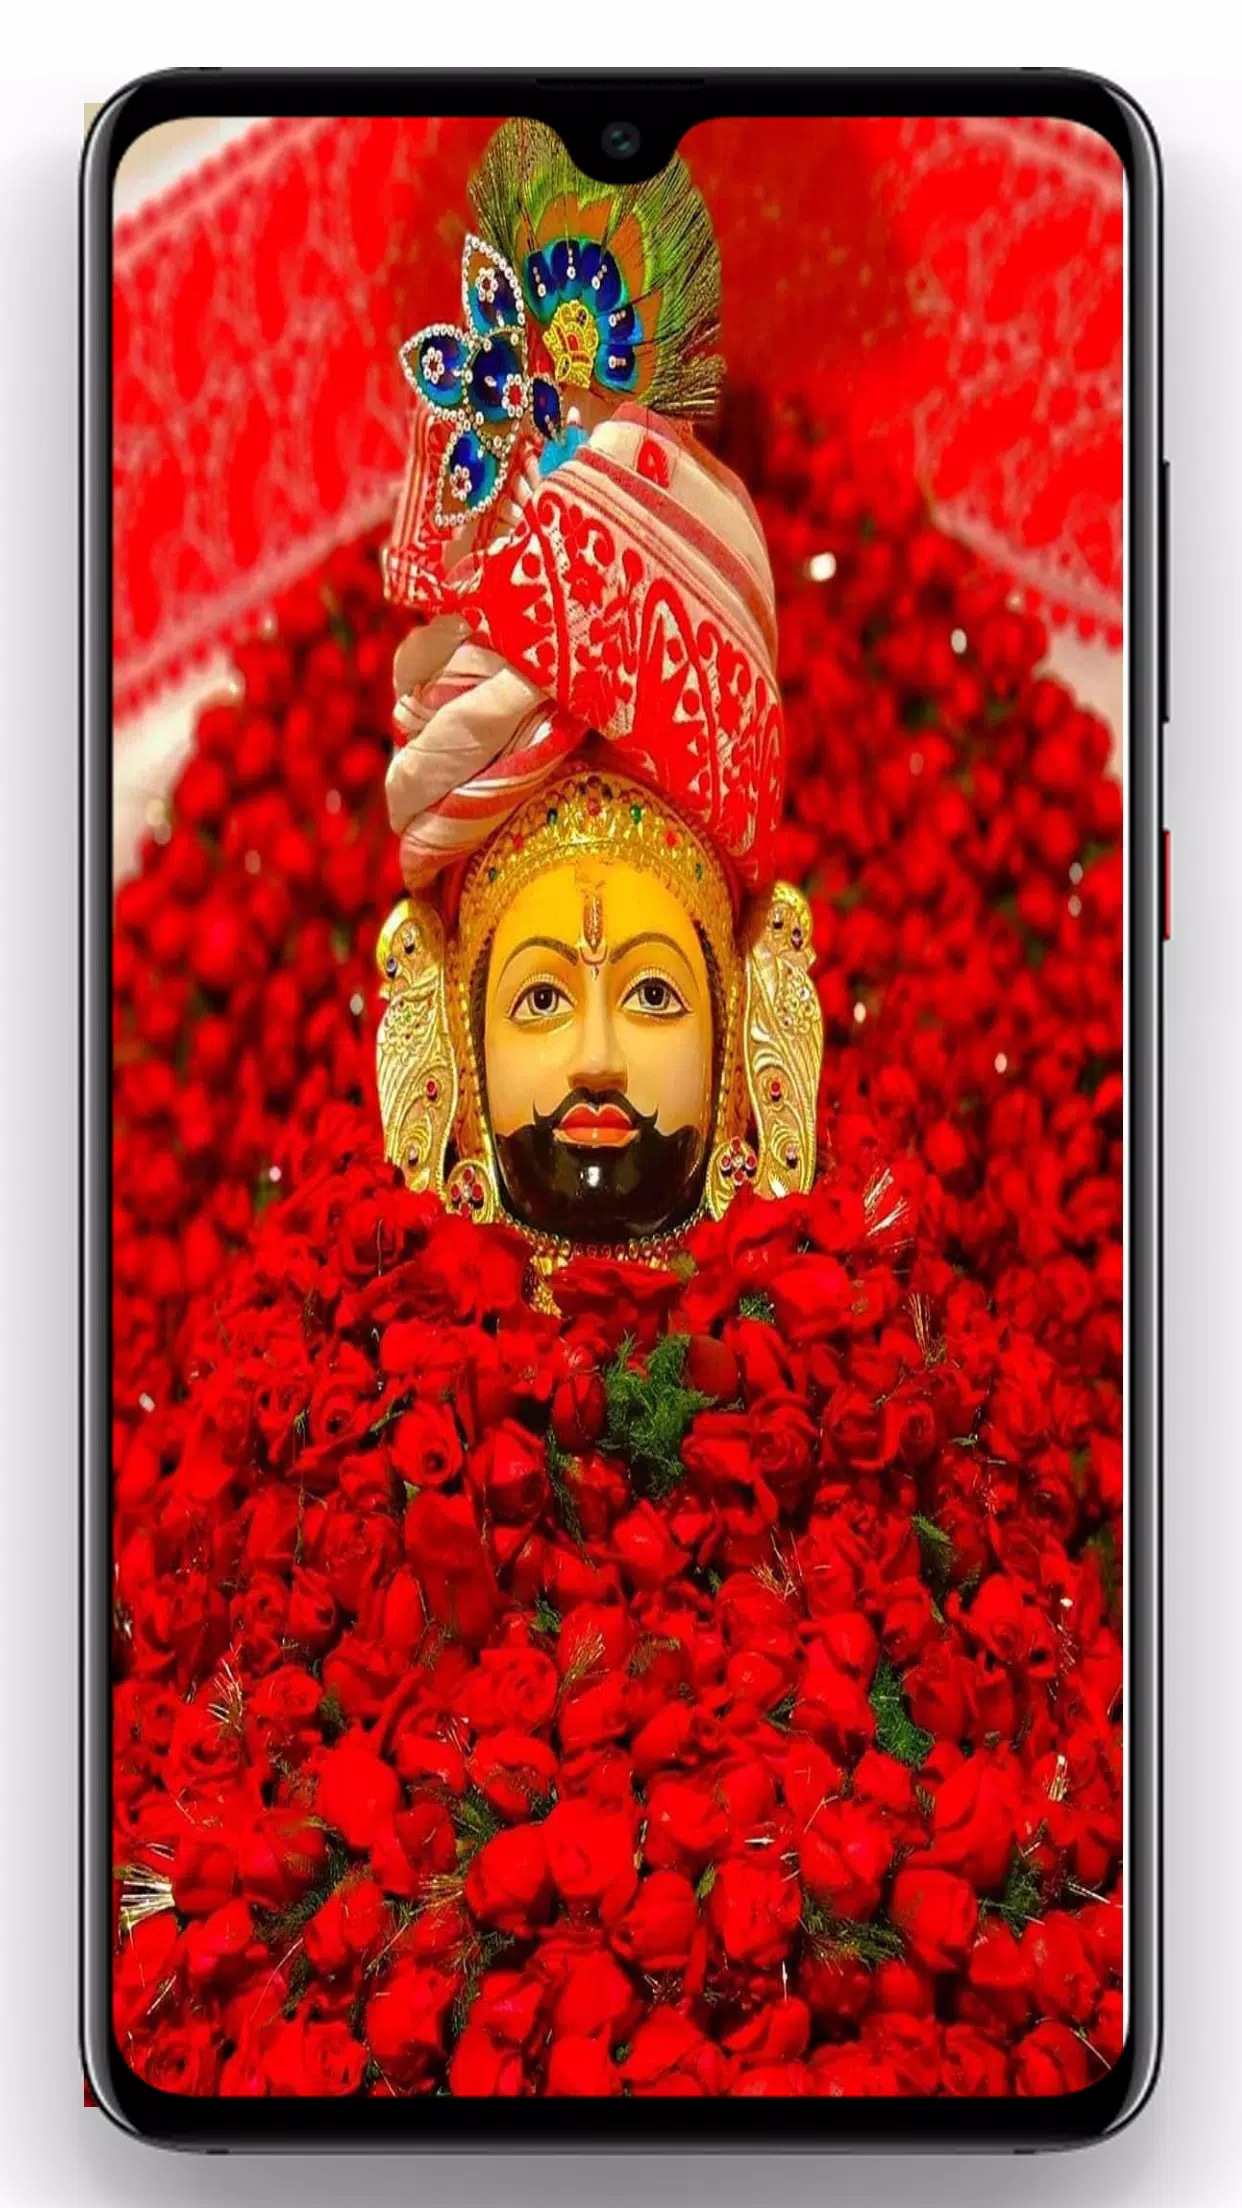 Khatu Shyam Ji wallpaper Android के लिए APK डाउनलोड करें